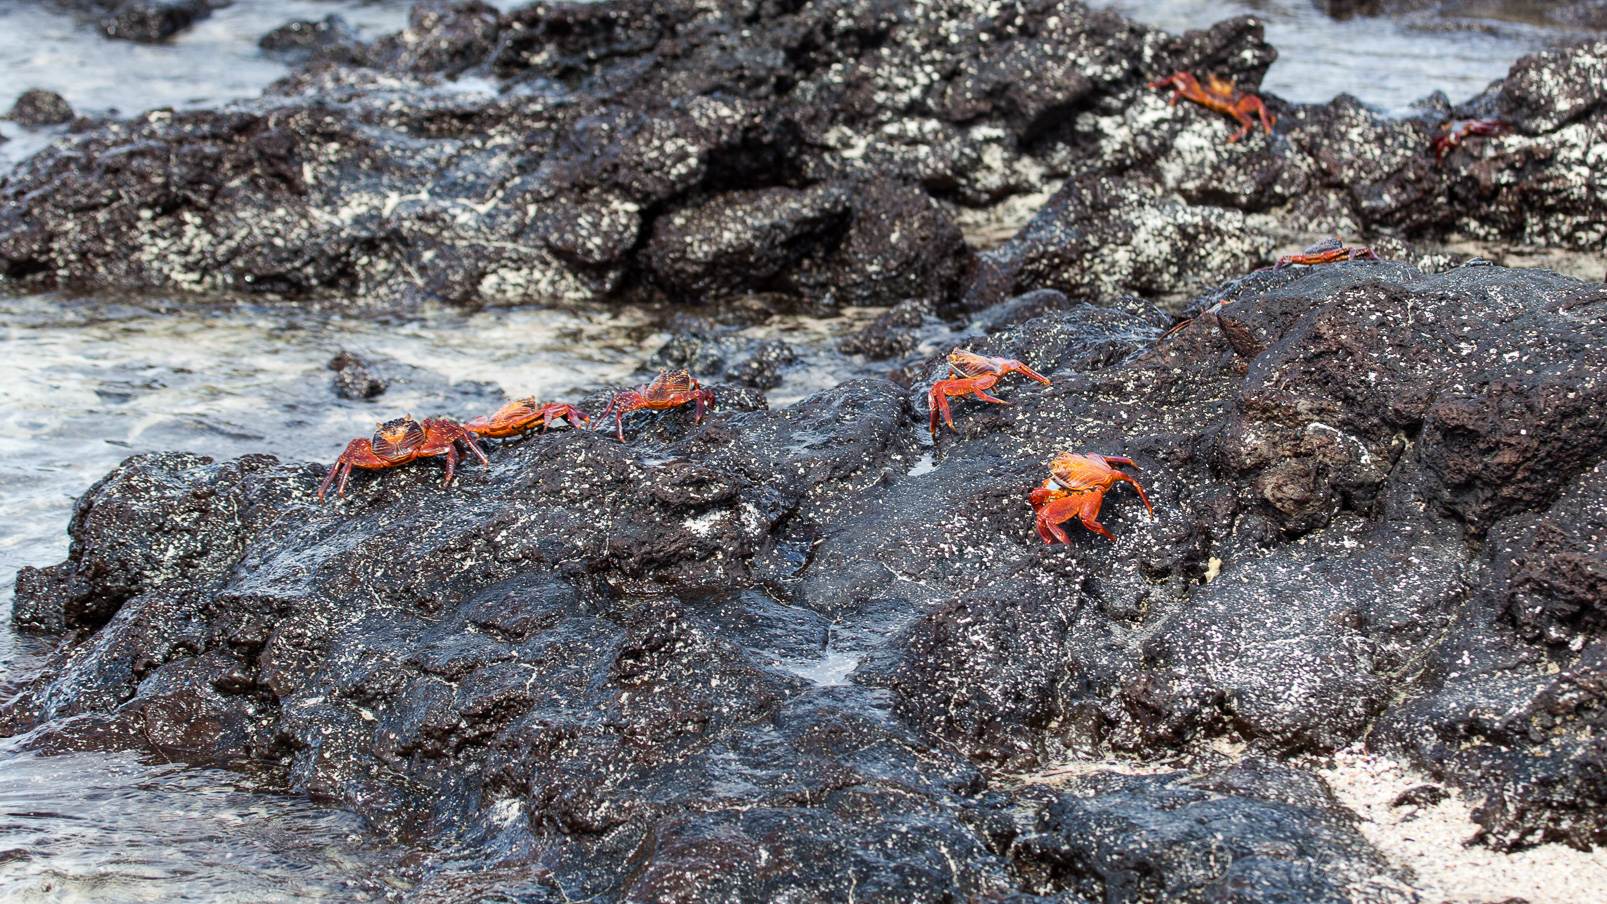 Sally-pied-léger ou crabe rouge, nous en verrons partout aux Galapagos